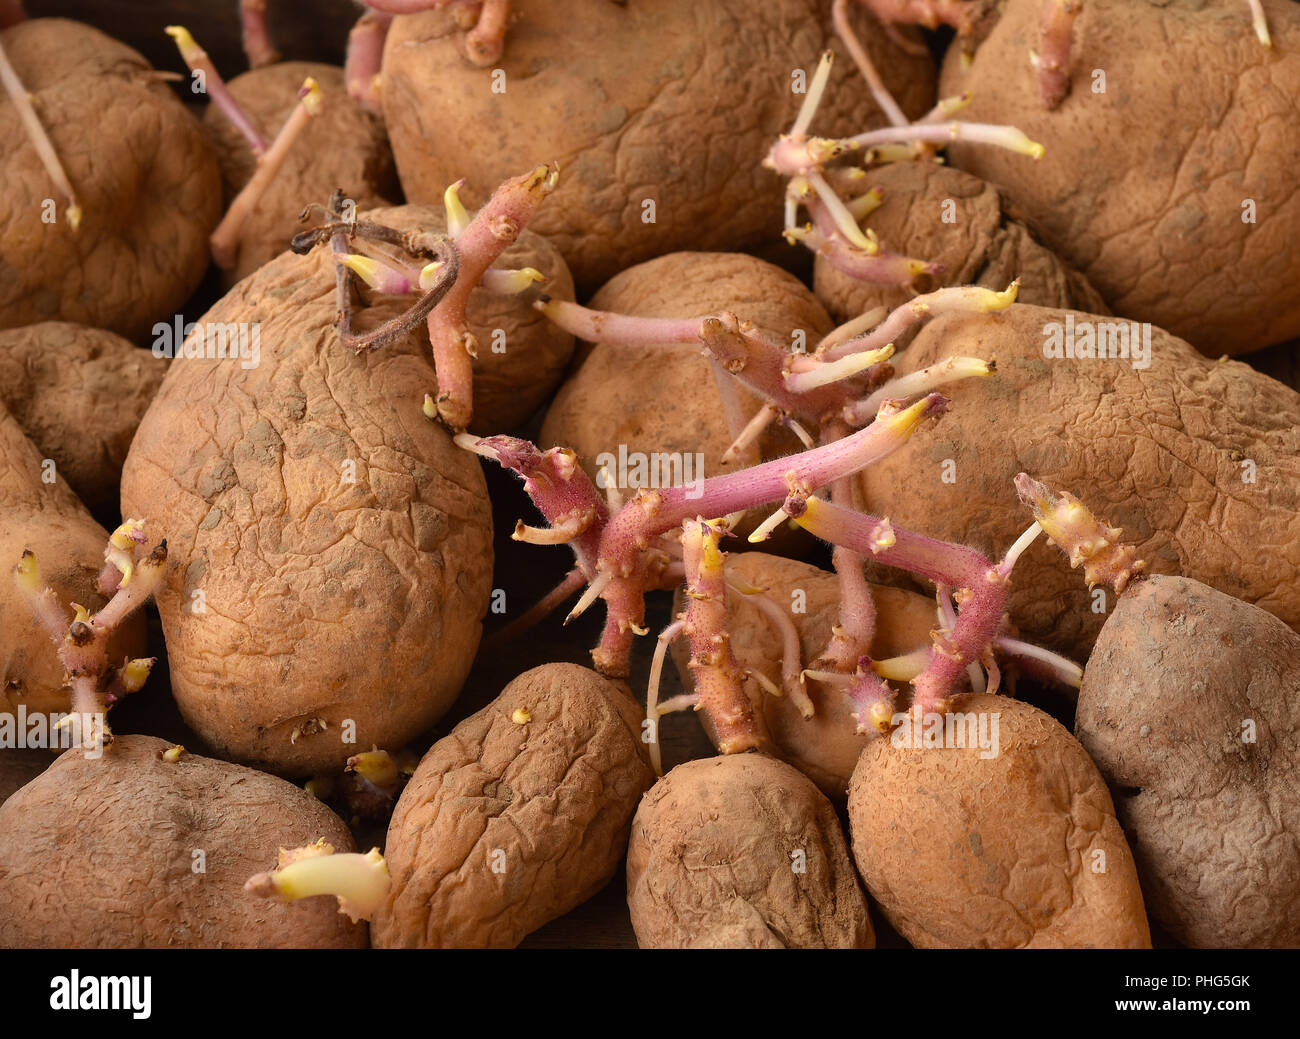 Potato; germination; Stock Photo